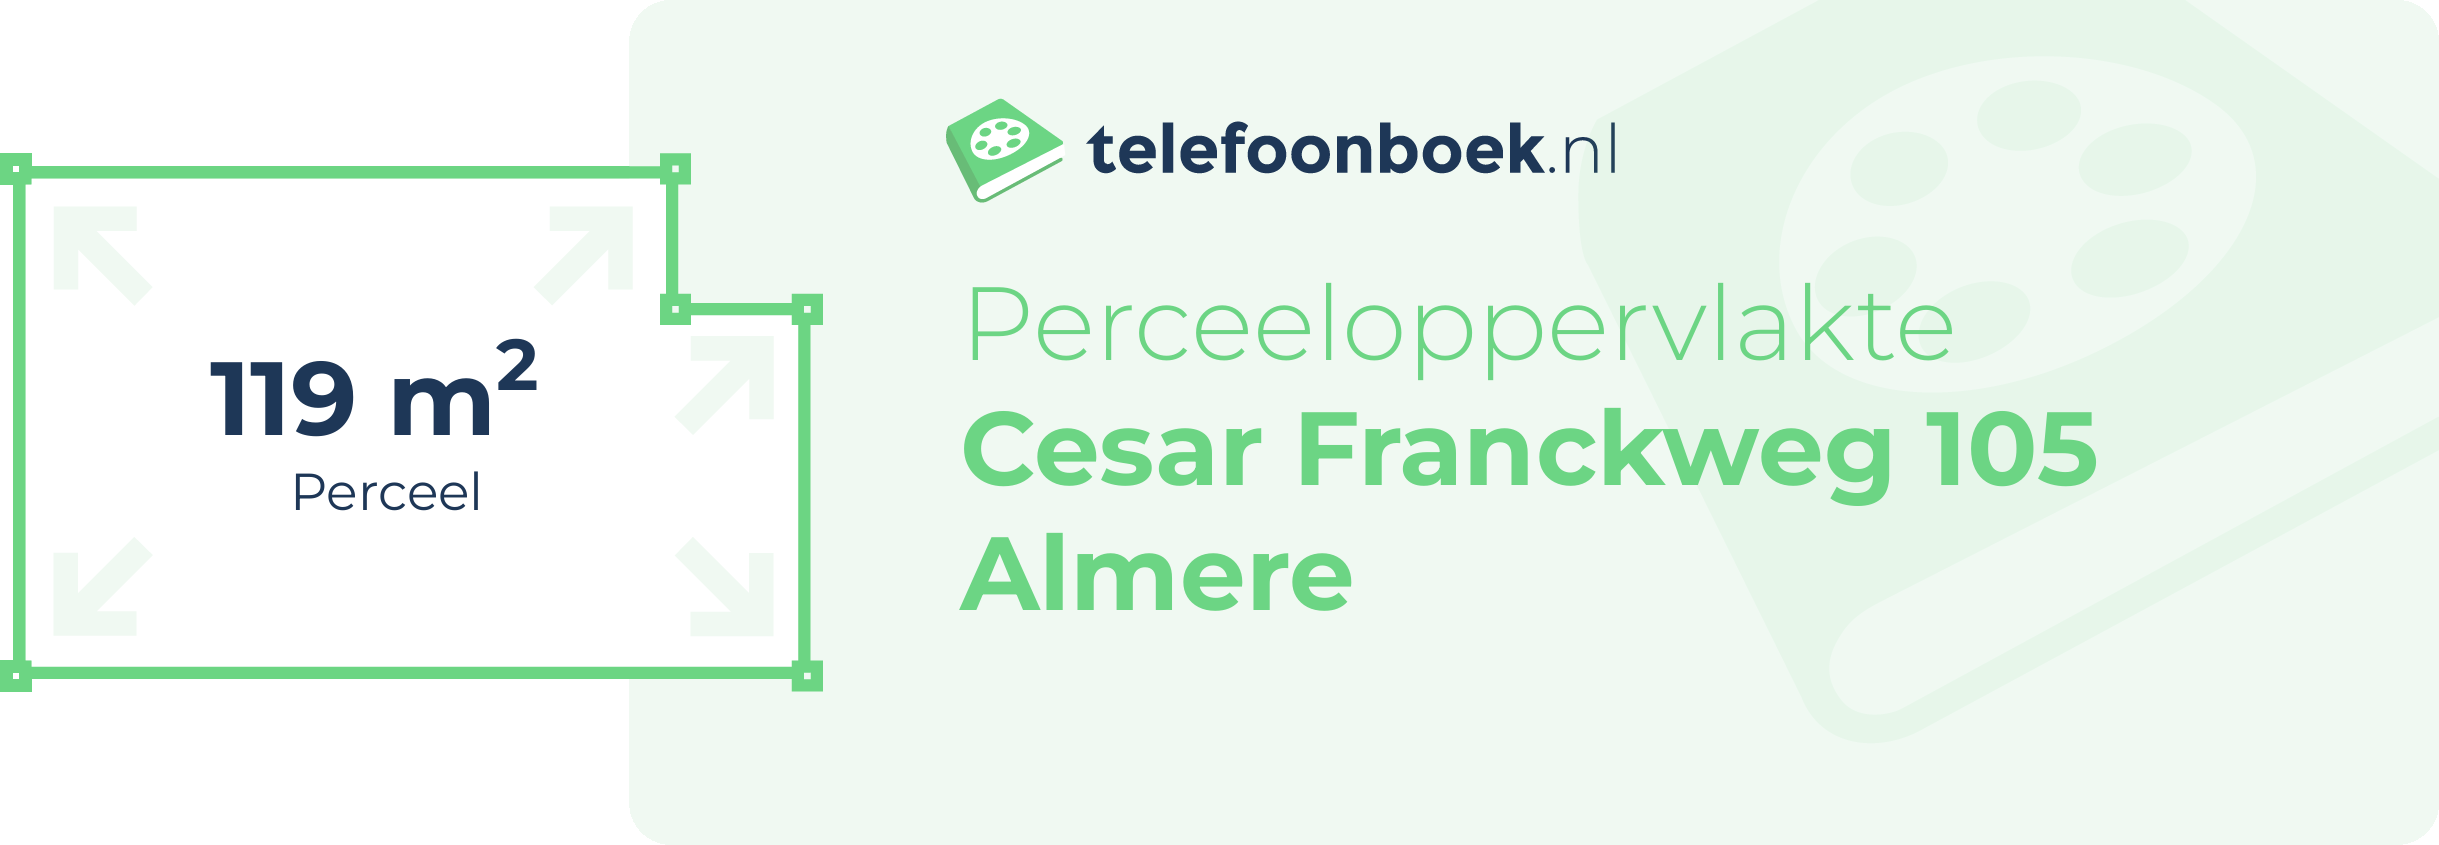 Perceeloppervlakte Cesar Franckweg 105 Almere